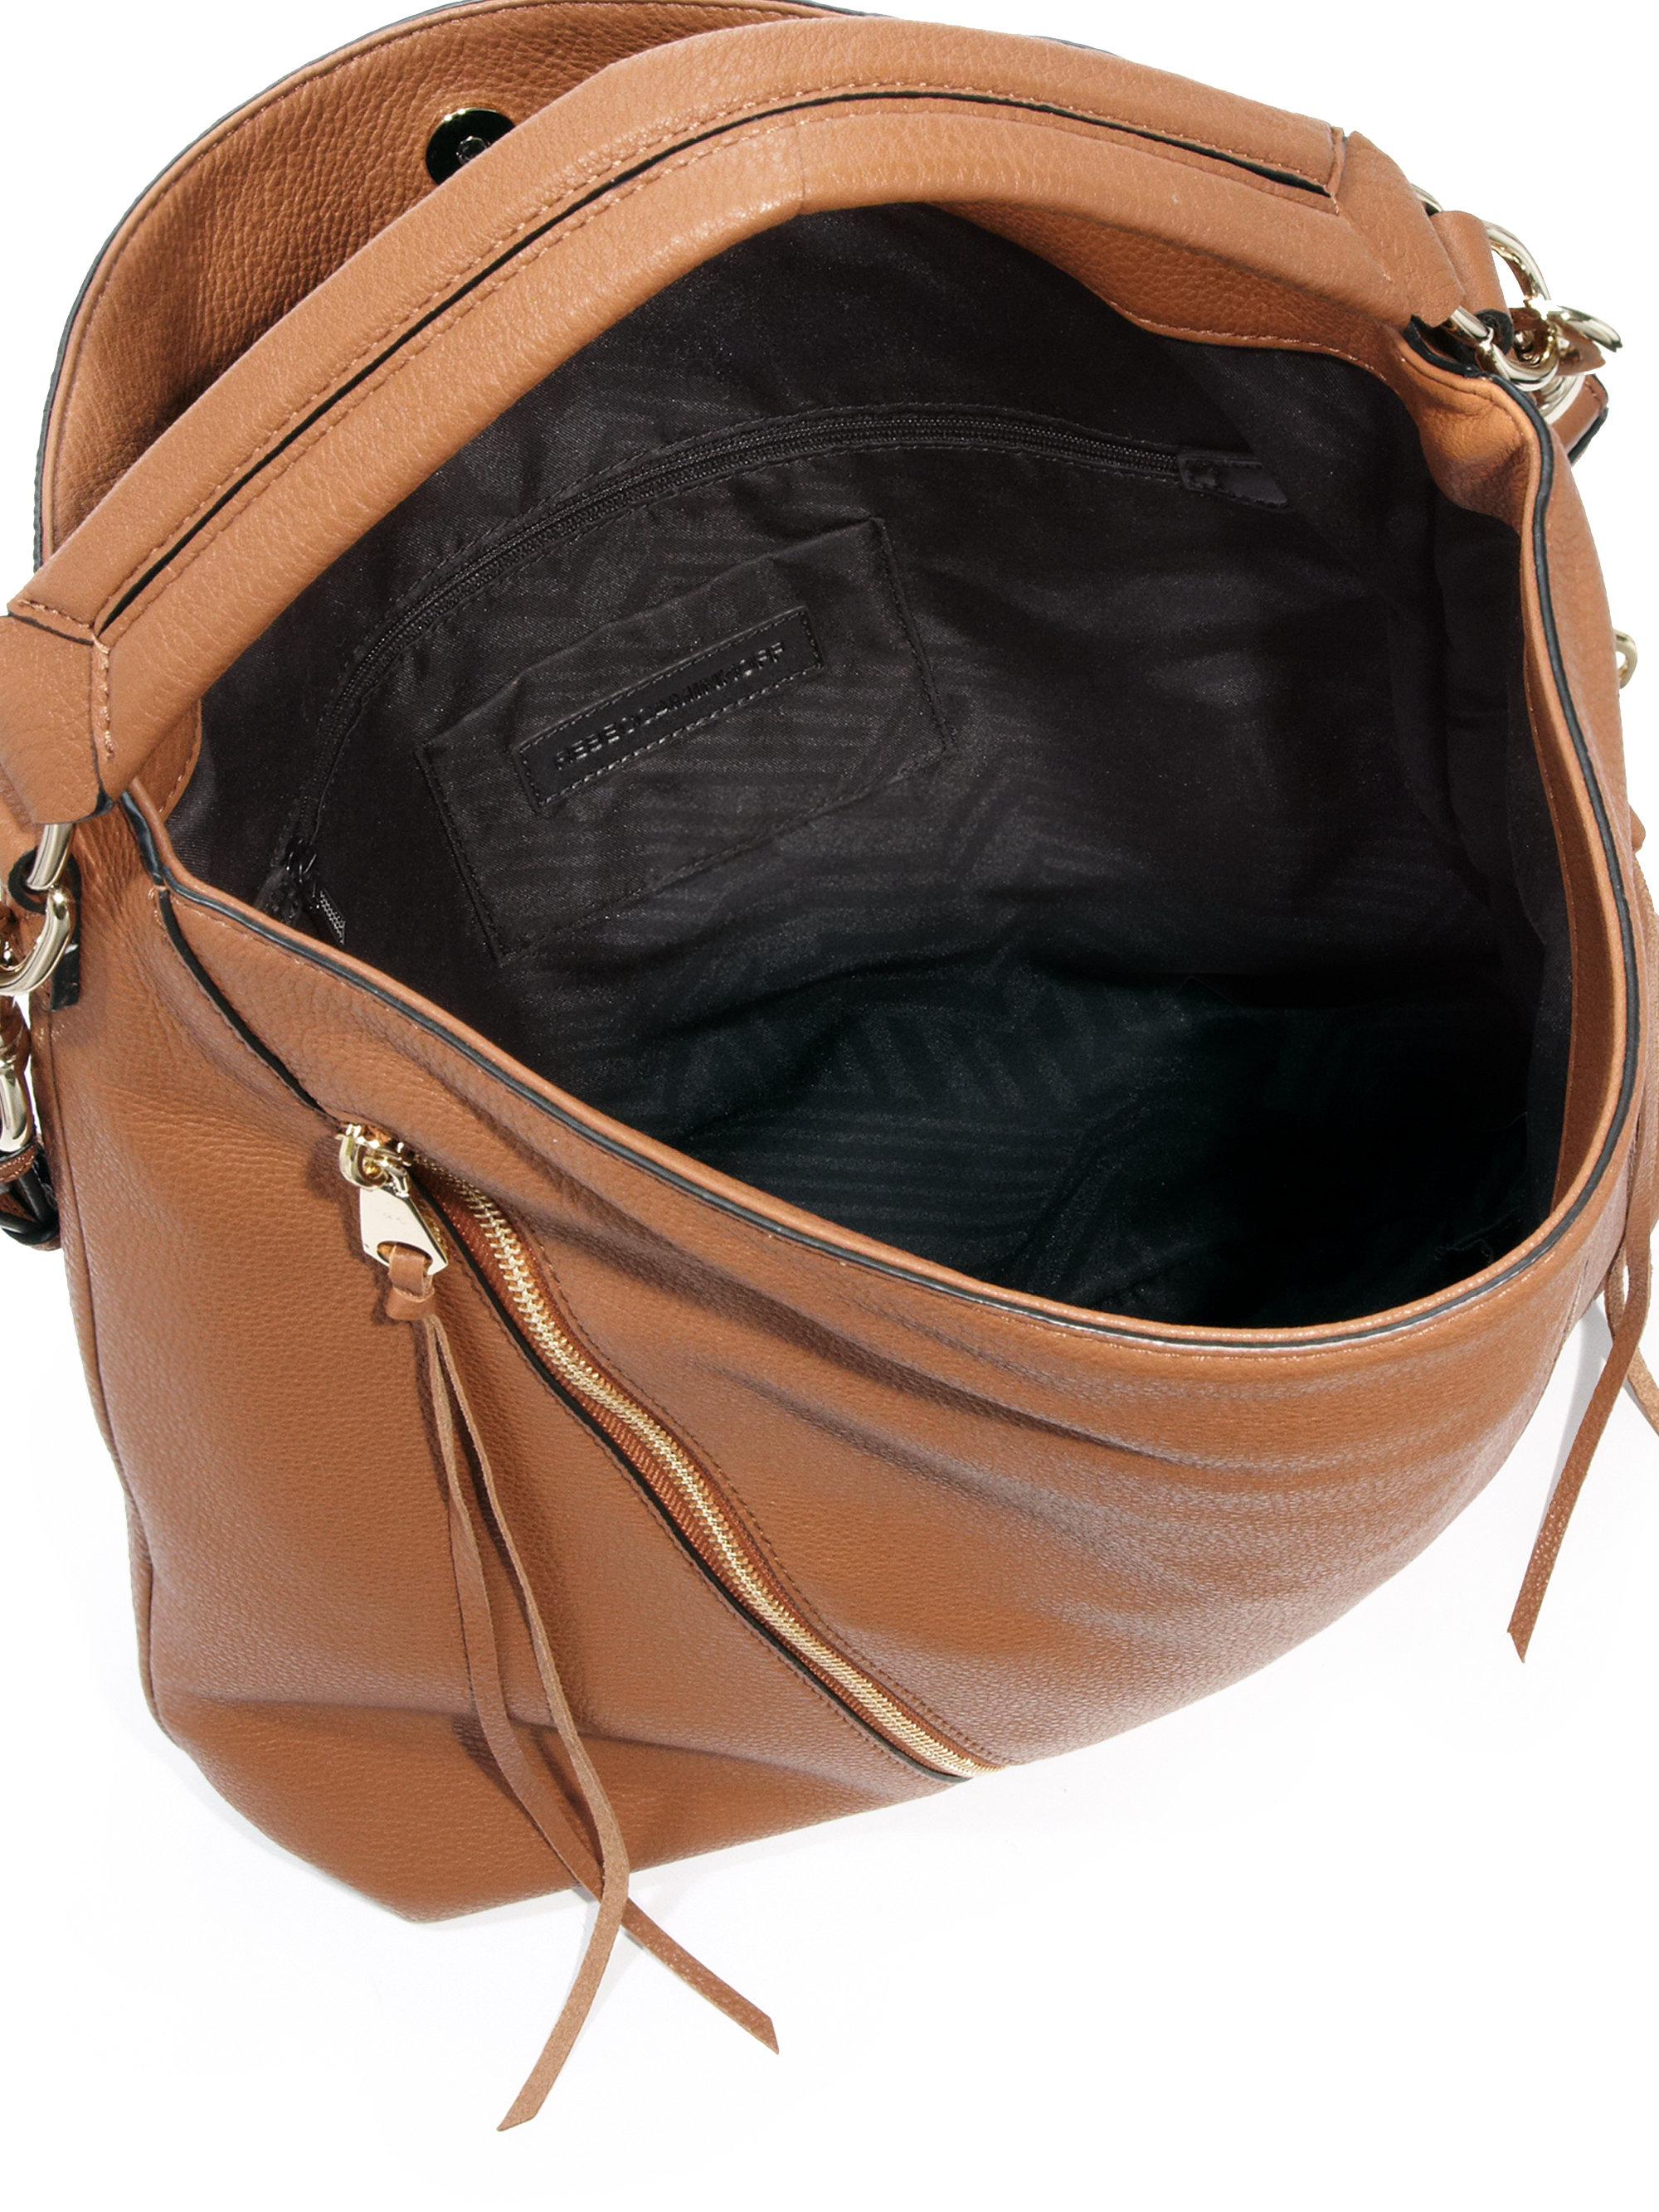 Lyst - Rebecca Minkoff Moto Leather Hobo Bag